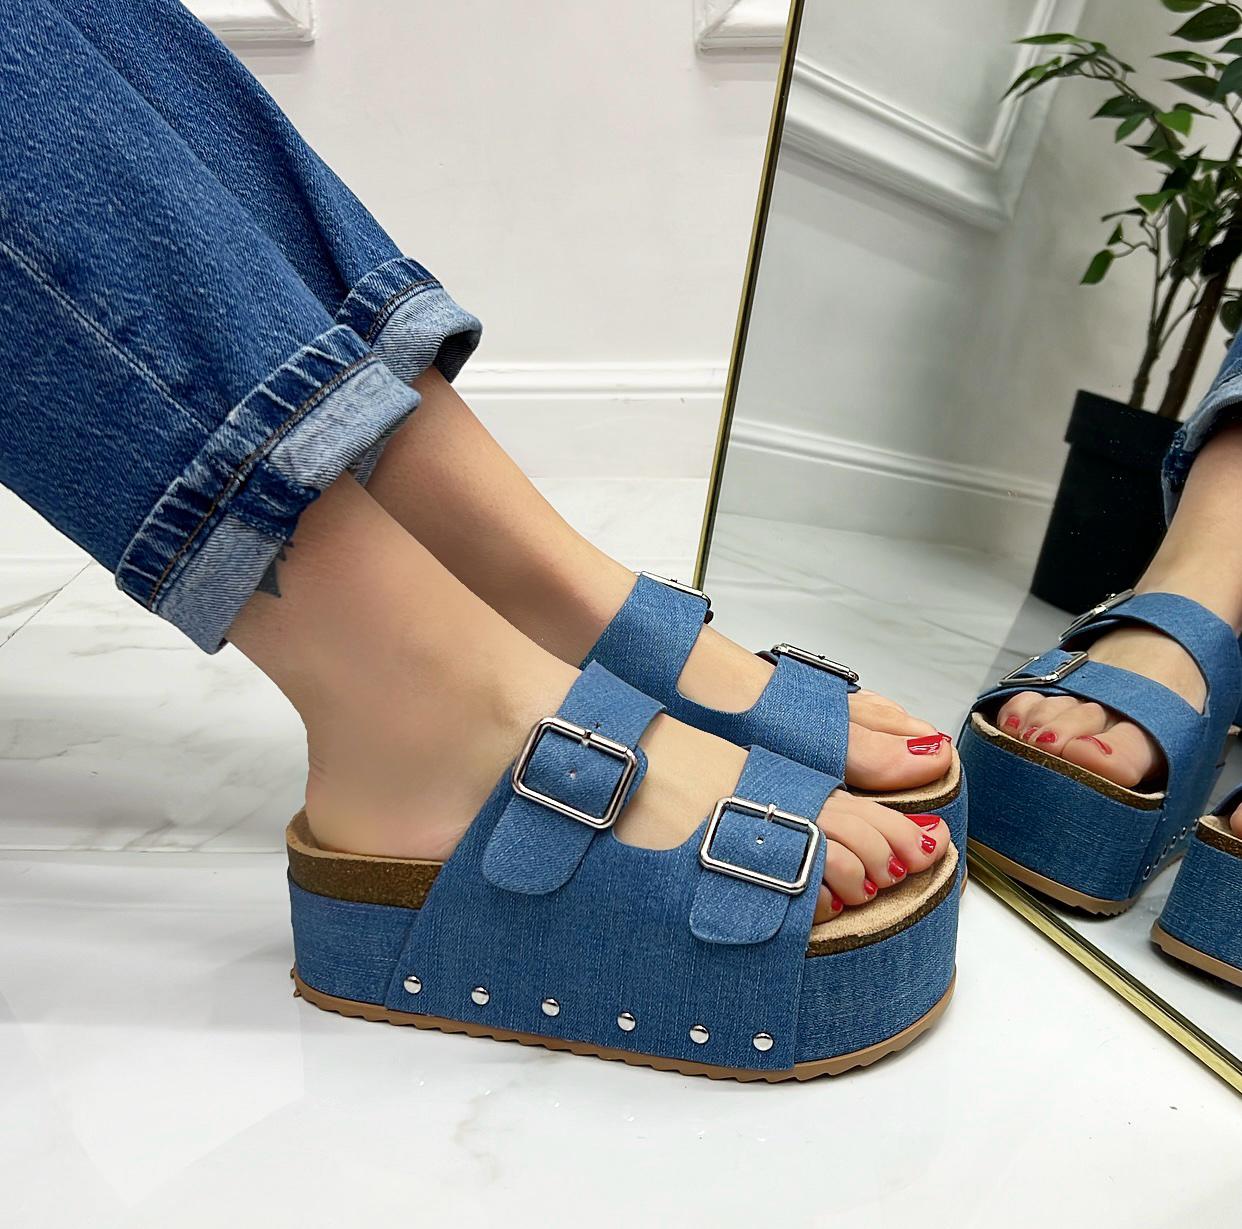 Lierin - Sandalo Donna Casual Comodo Fibbie Jeans Blu